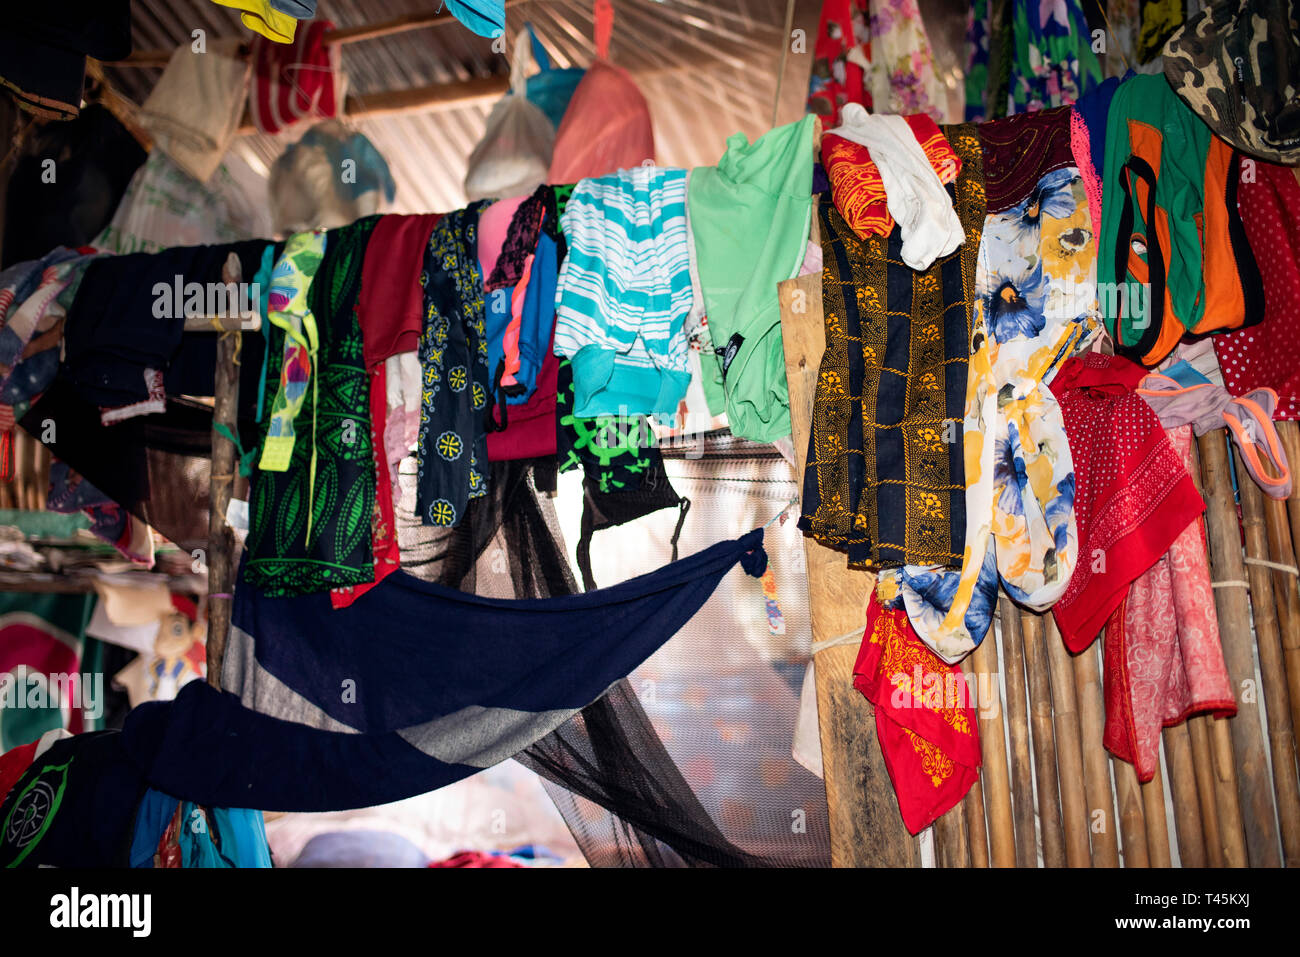 Kleiderschrank in eine Kuna Home; farbige weibliche Kleidung in einer reihe hängen. Carti Insel; Guna Yala indigenen Dörfern. San Blas Inseln, Panama. Okt 2018 Stockfoto